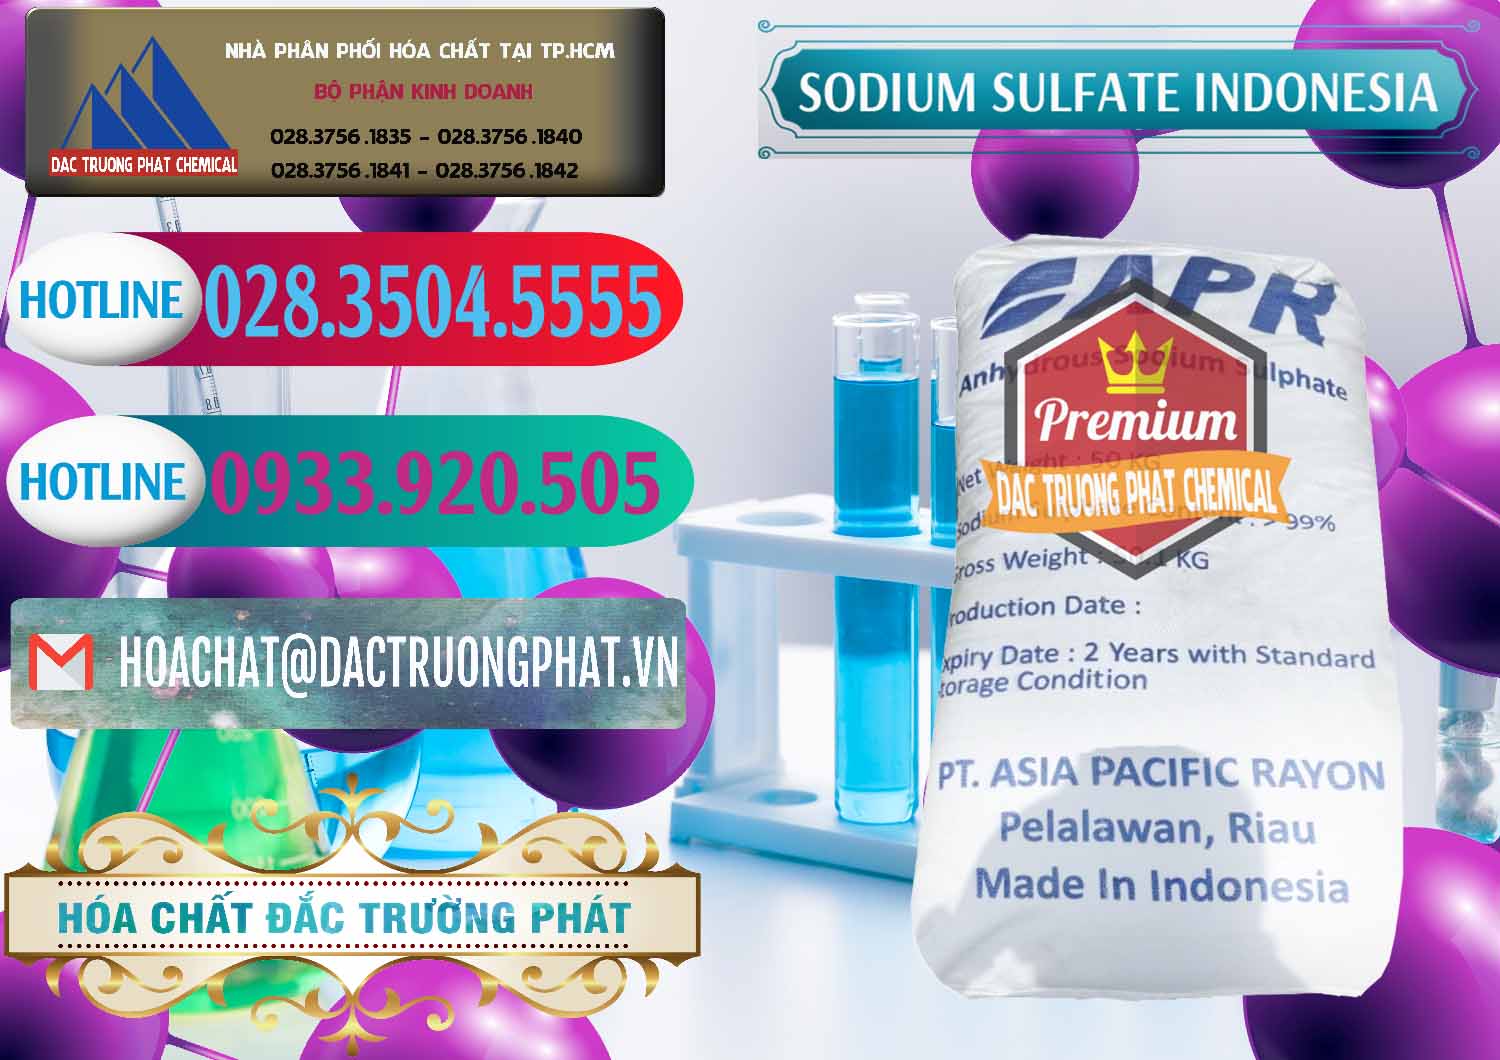 Cty chuyên phân phối và bán Sodium Sulphate - Muối Sunfat Na2SO4 APR Indonesia - 0460 - Công ty phân phối và nhập khẩu hóa chất tại TP.HCM - truongphat.vn